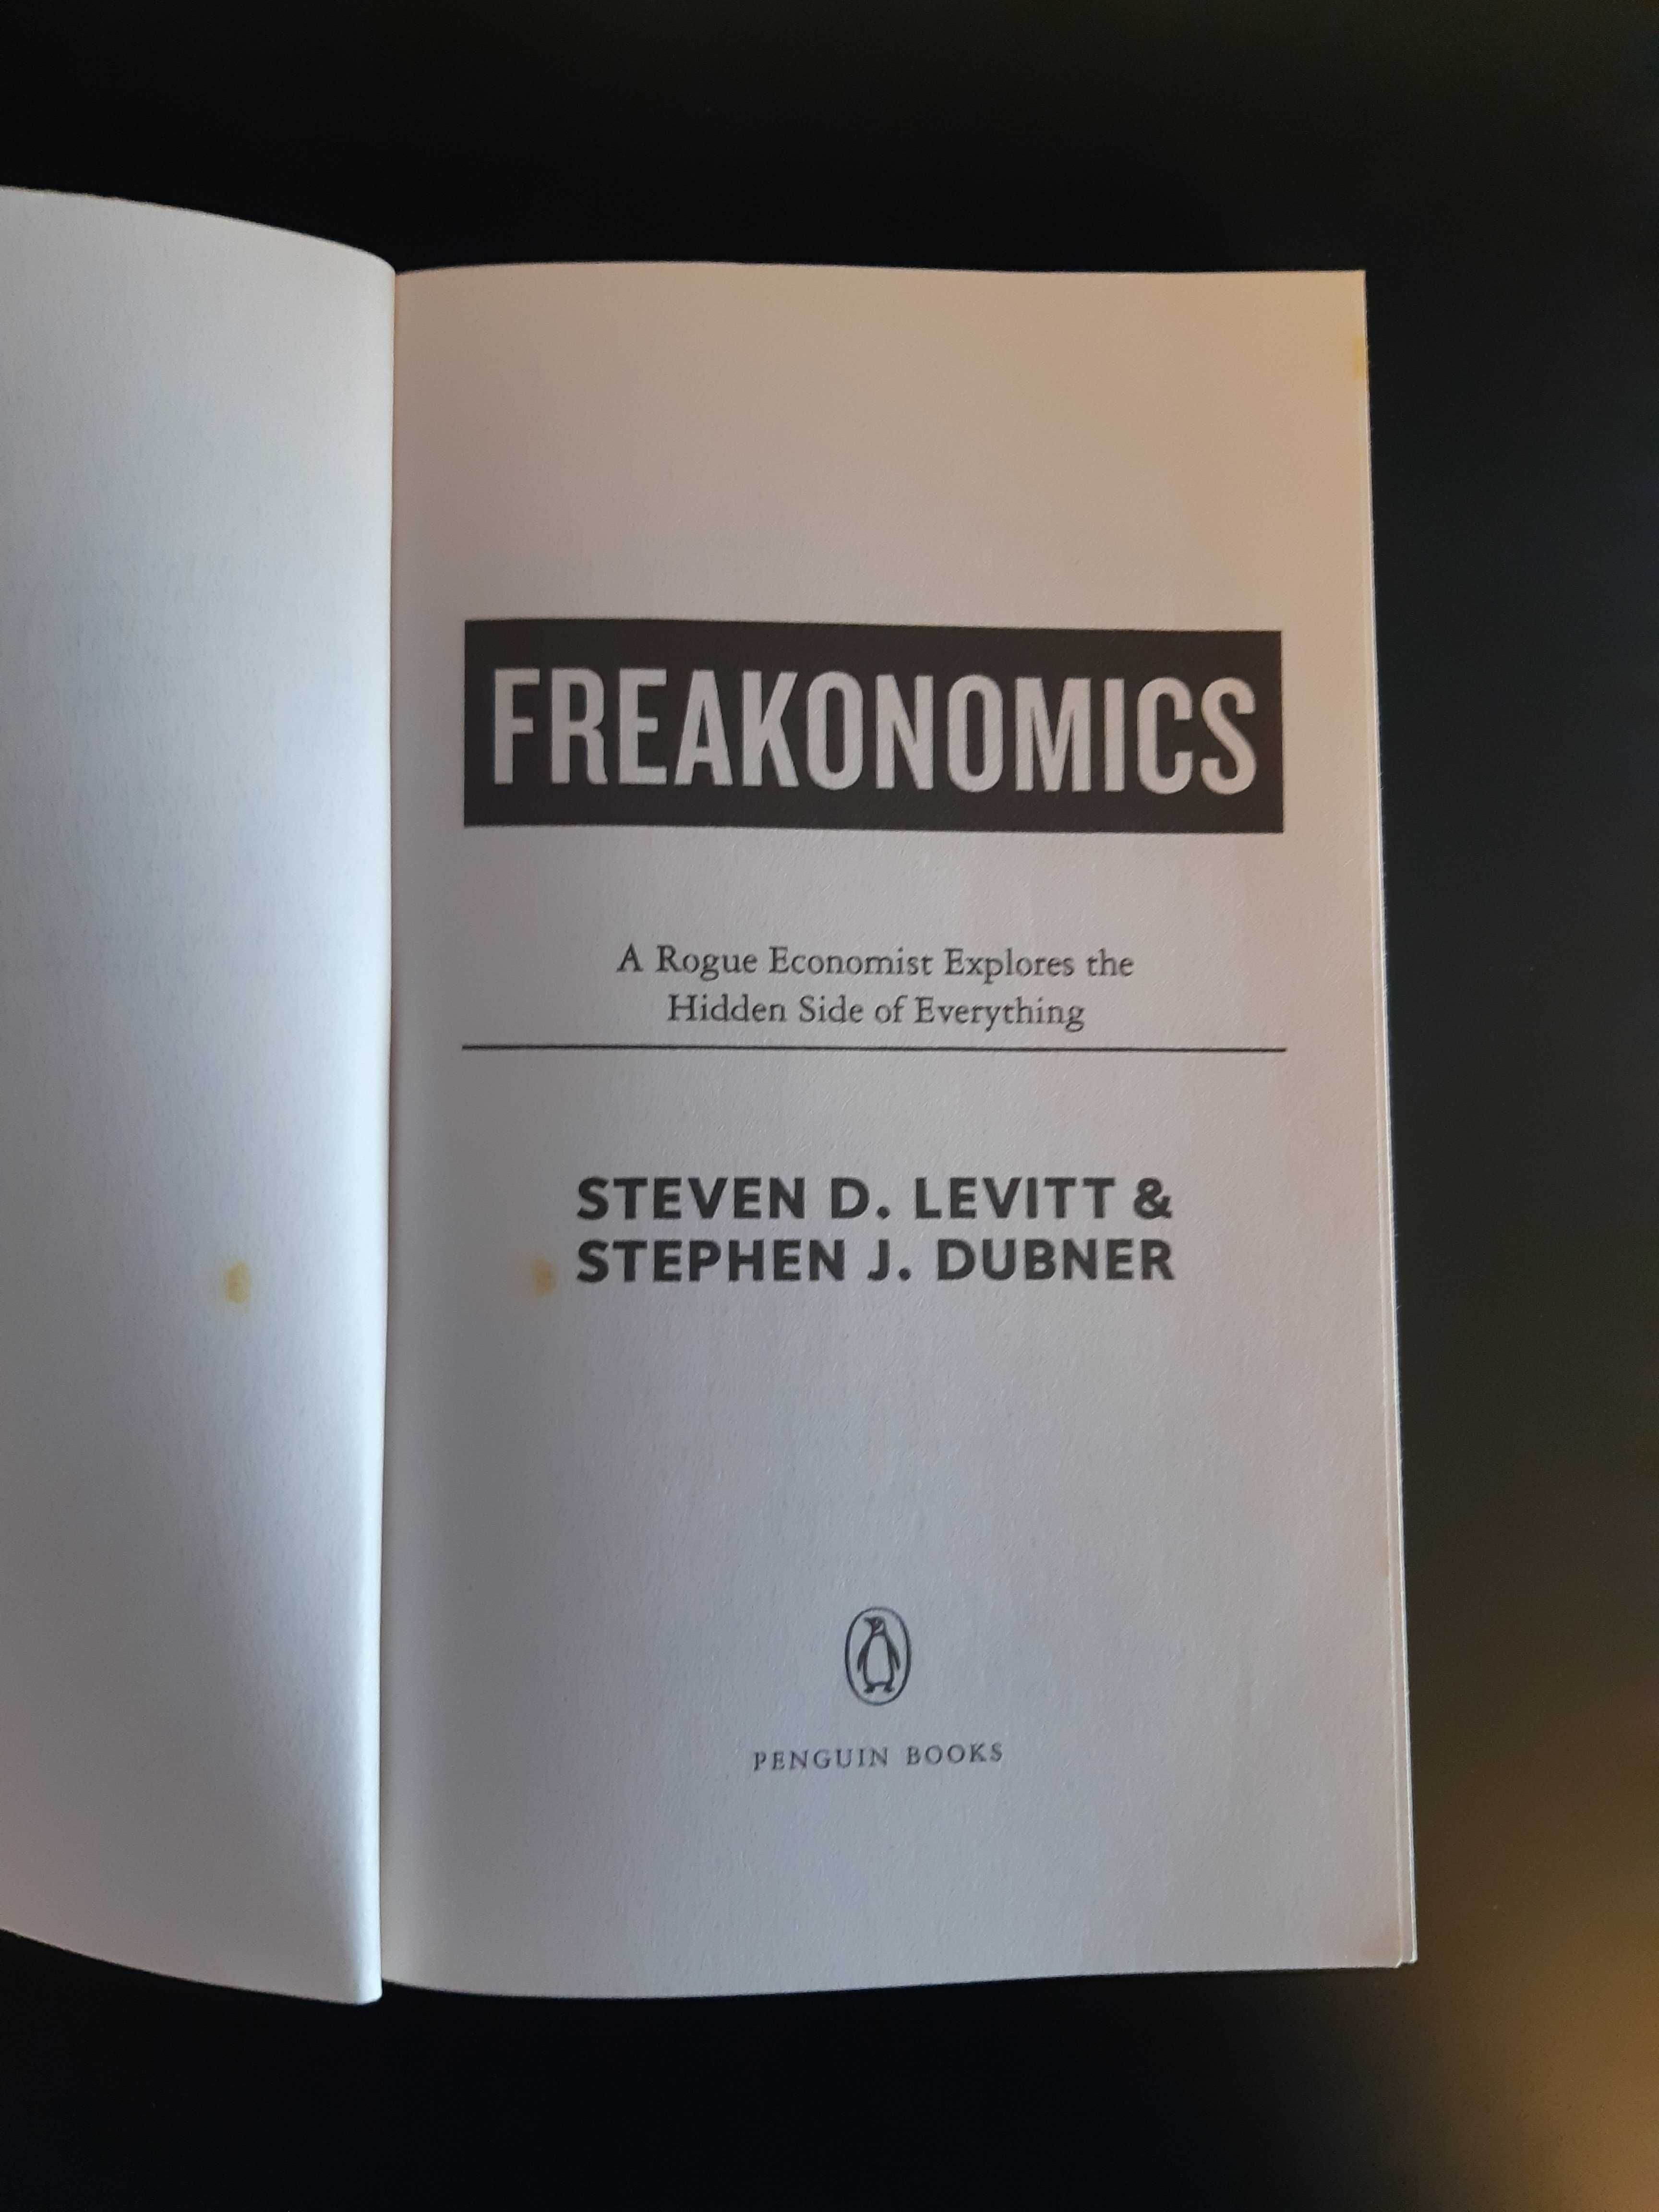 Freakonomics, Steven D. Levitt & Stephen J. Dubner